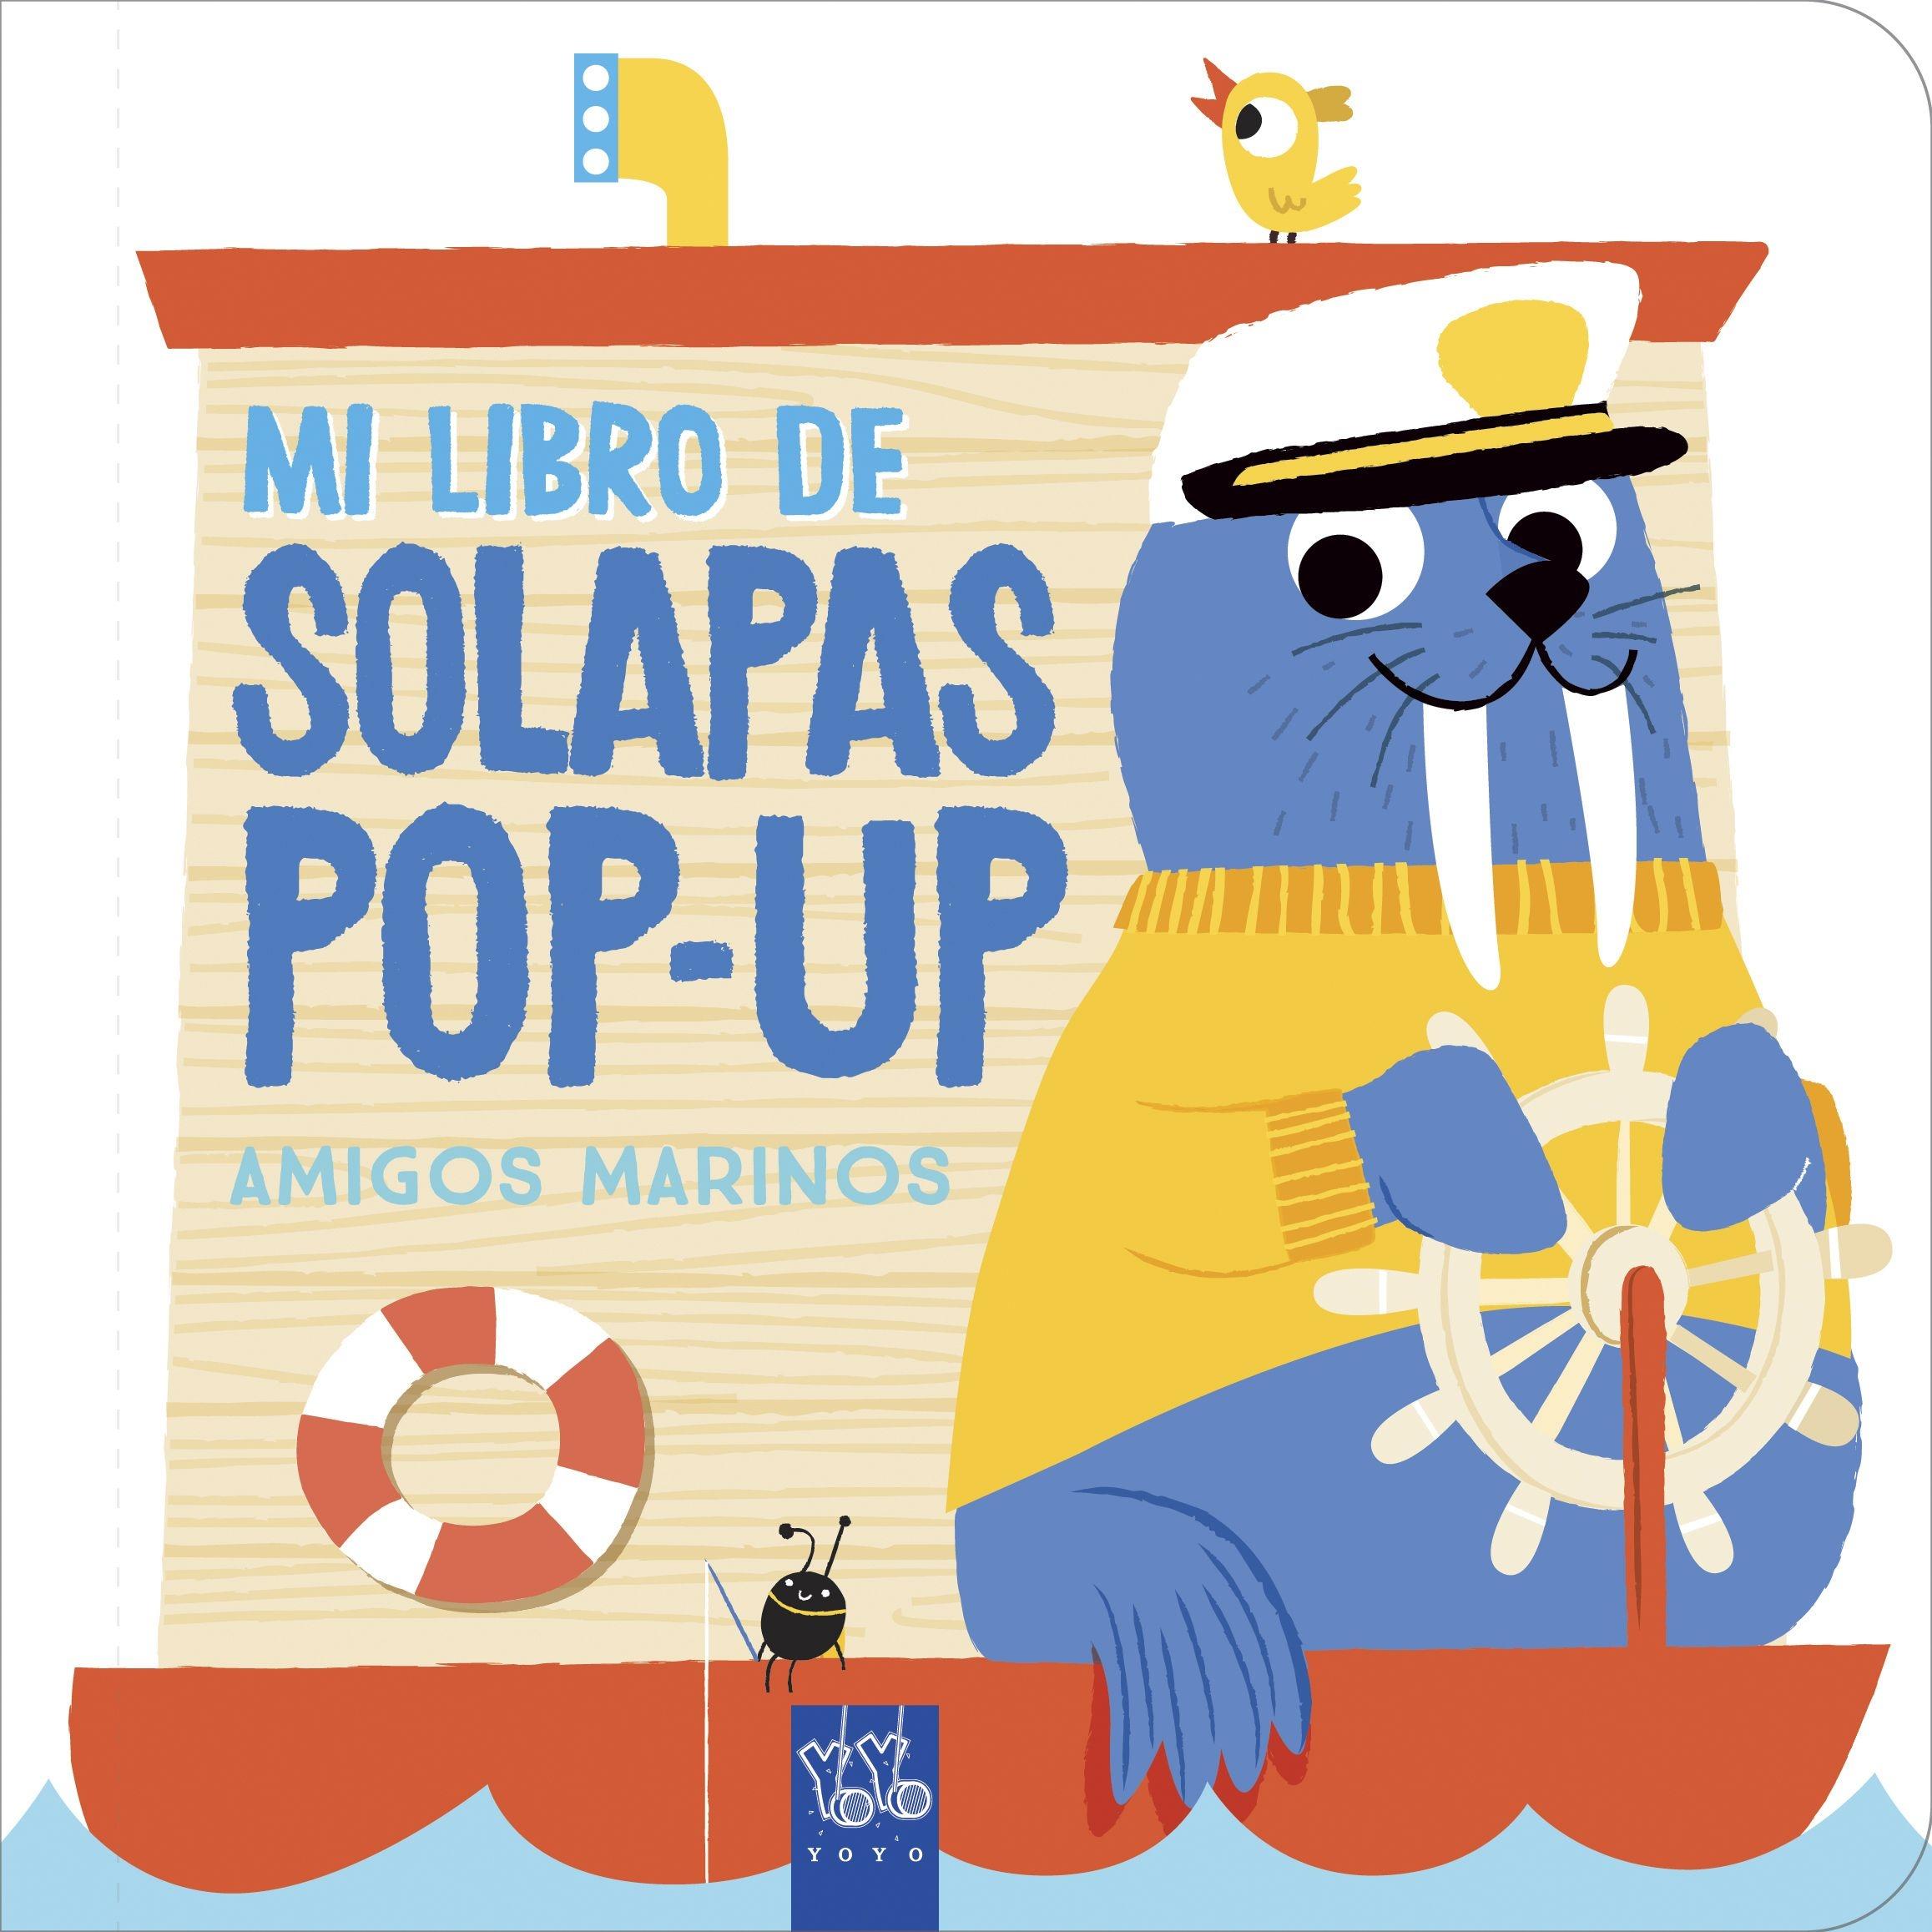 Amigos marinos "Mi libro de solapas pop-up"